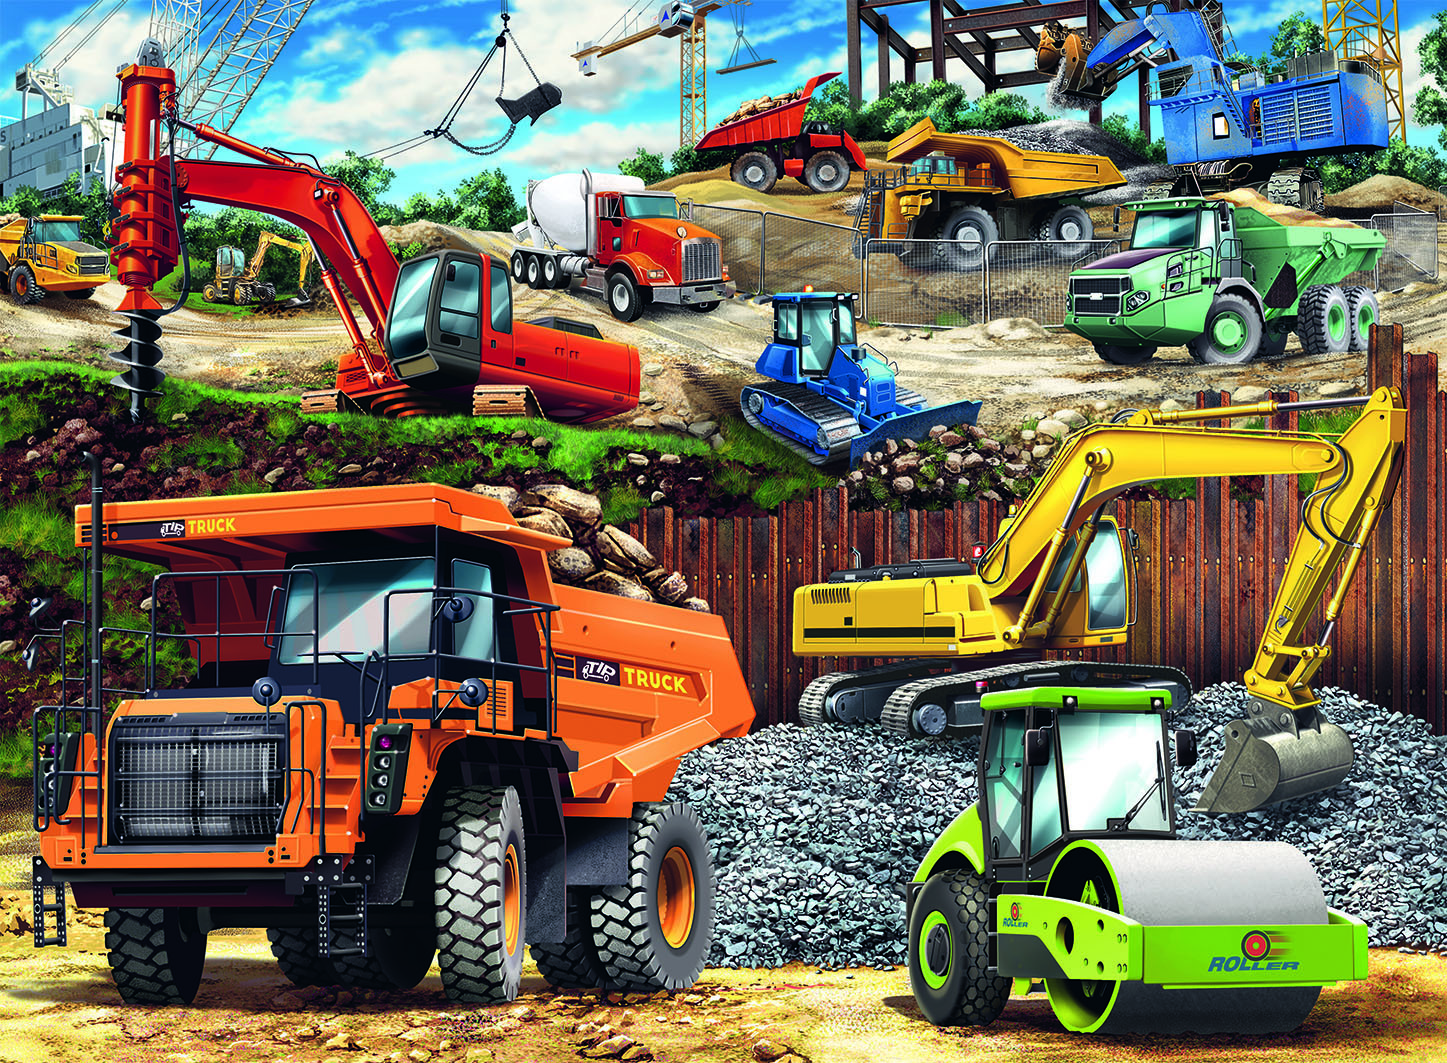 100 Pc Construction Vehicles Puzzle - Imagine That Toys